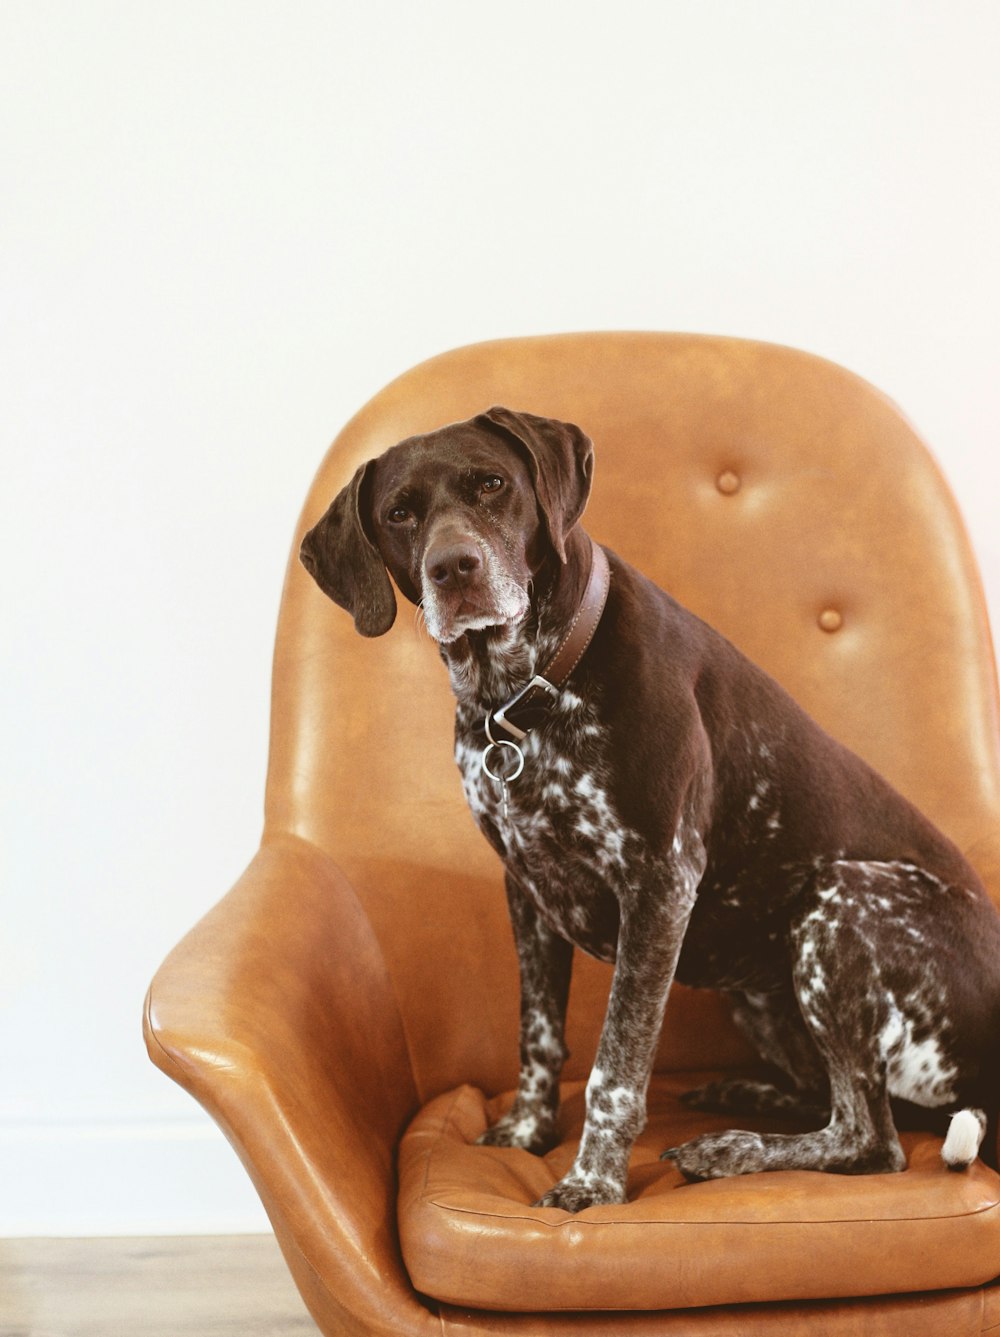 Perro blanco y negro de pelo corto sobre sillón de cuero naranja